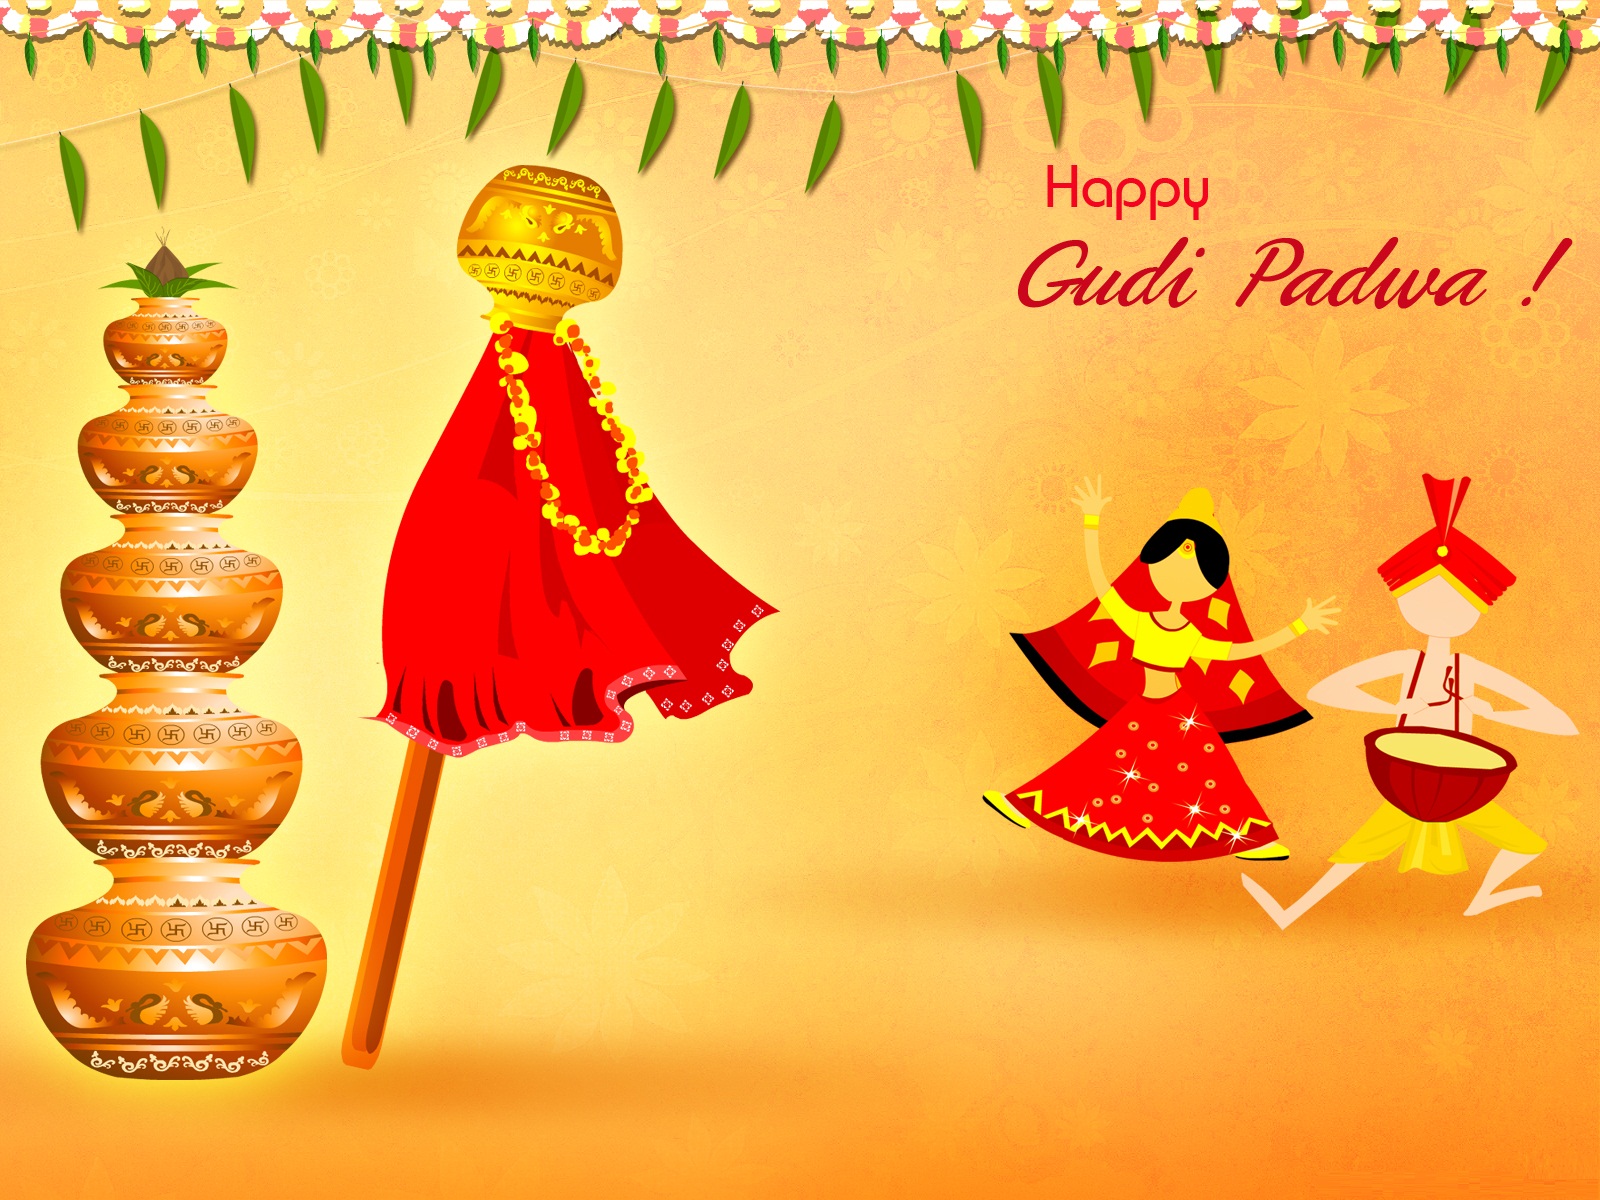 Happy Gudi Padwa Wishes